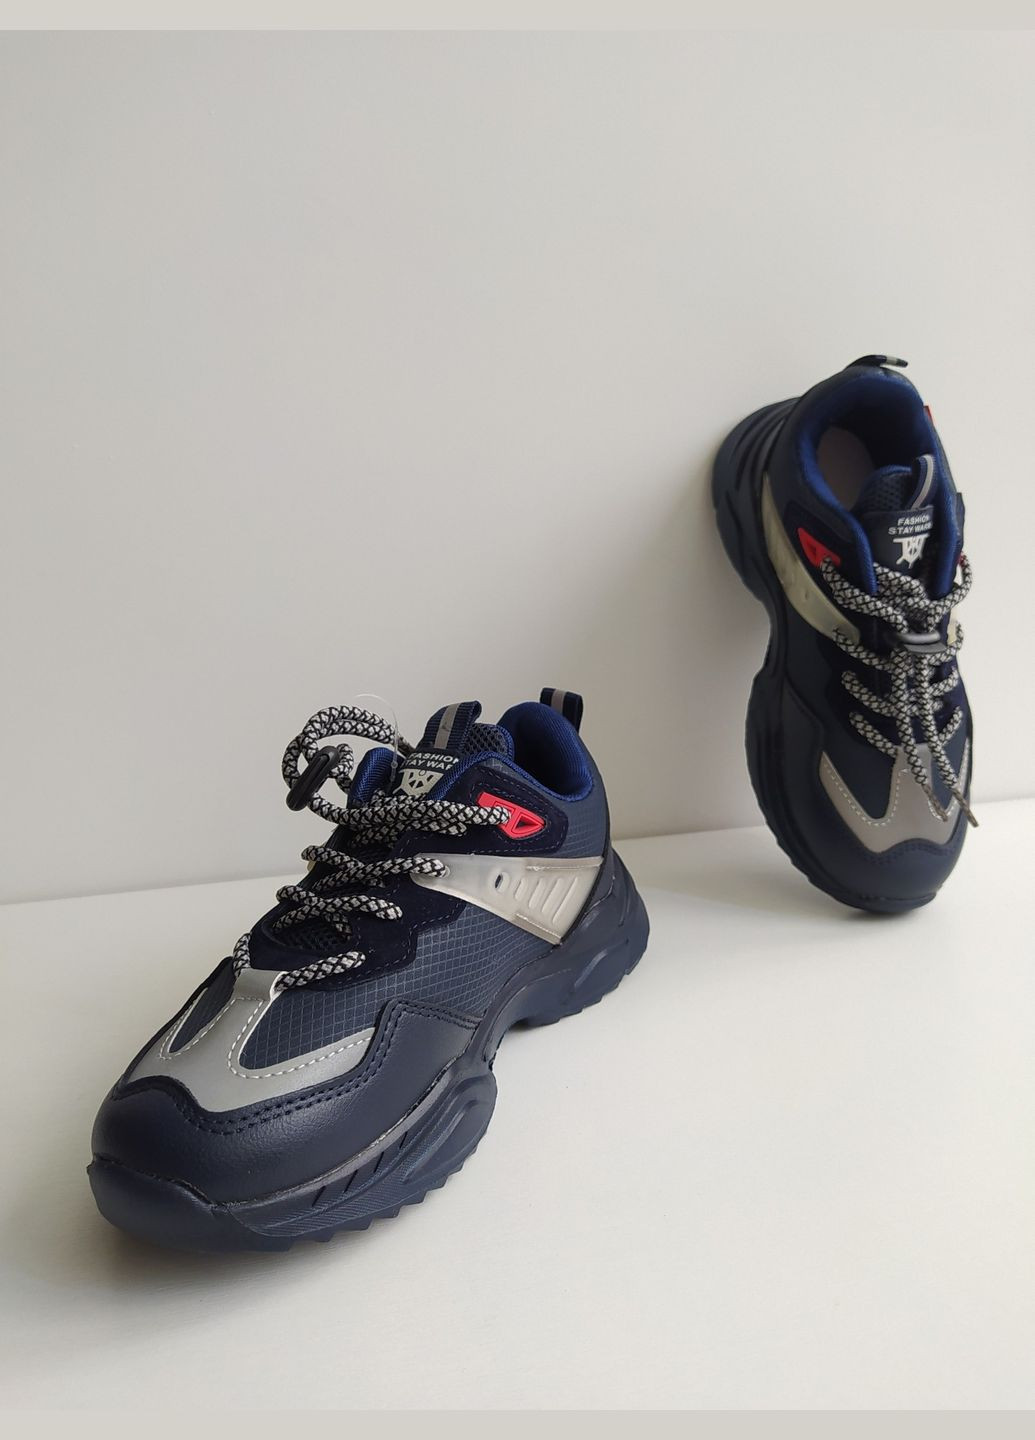 Синій дитячі кросівки 31 р 19,8 см синій артикул к312 Jong Golf